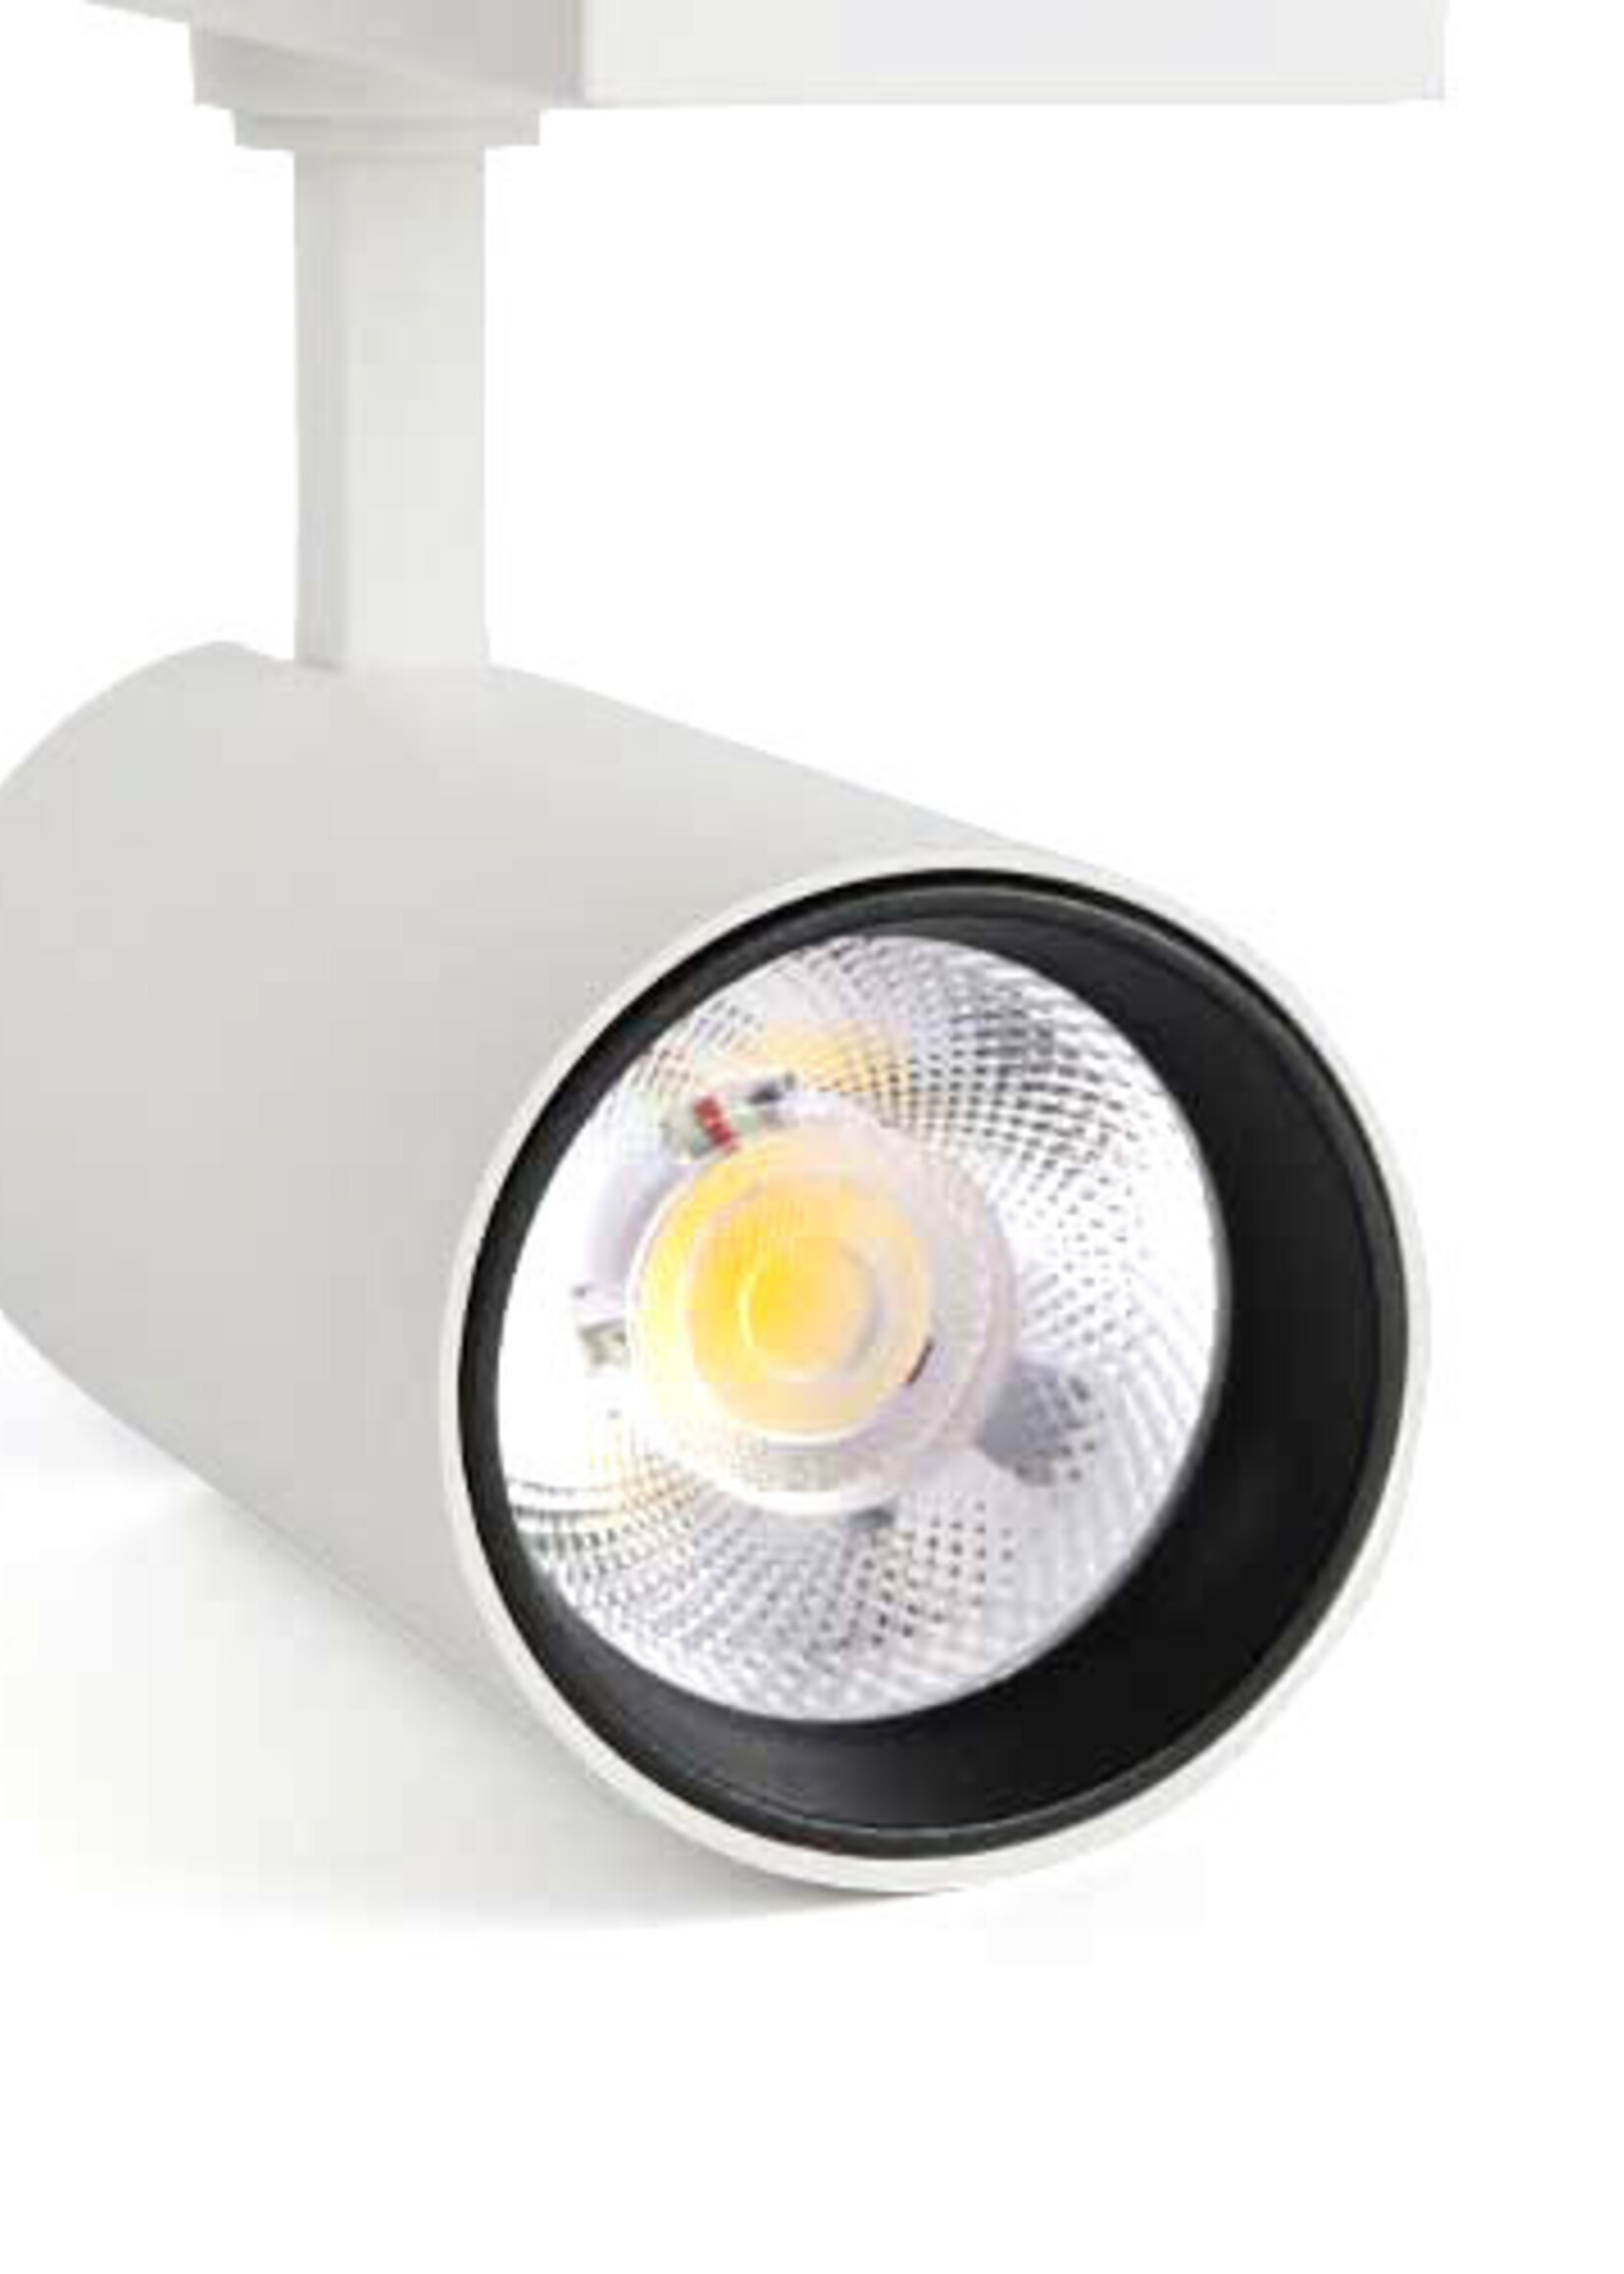 LEDWINKEL-Online LED Track Light Head 3 phase white 10W